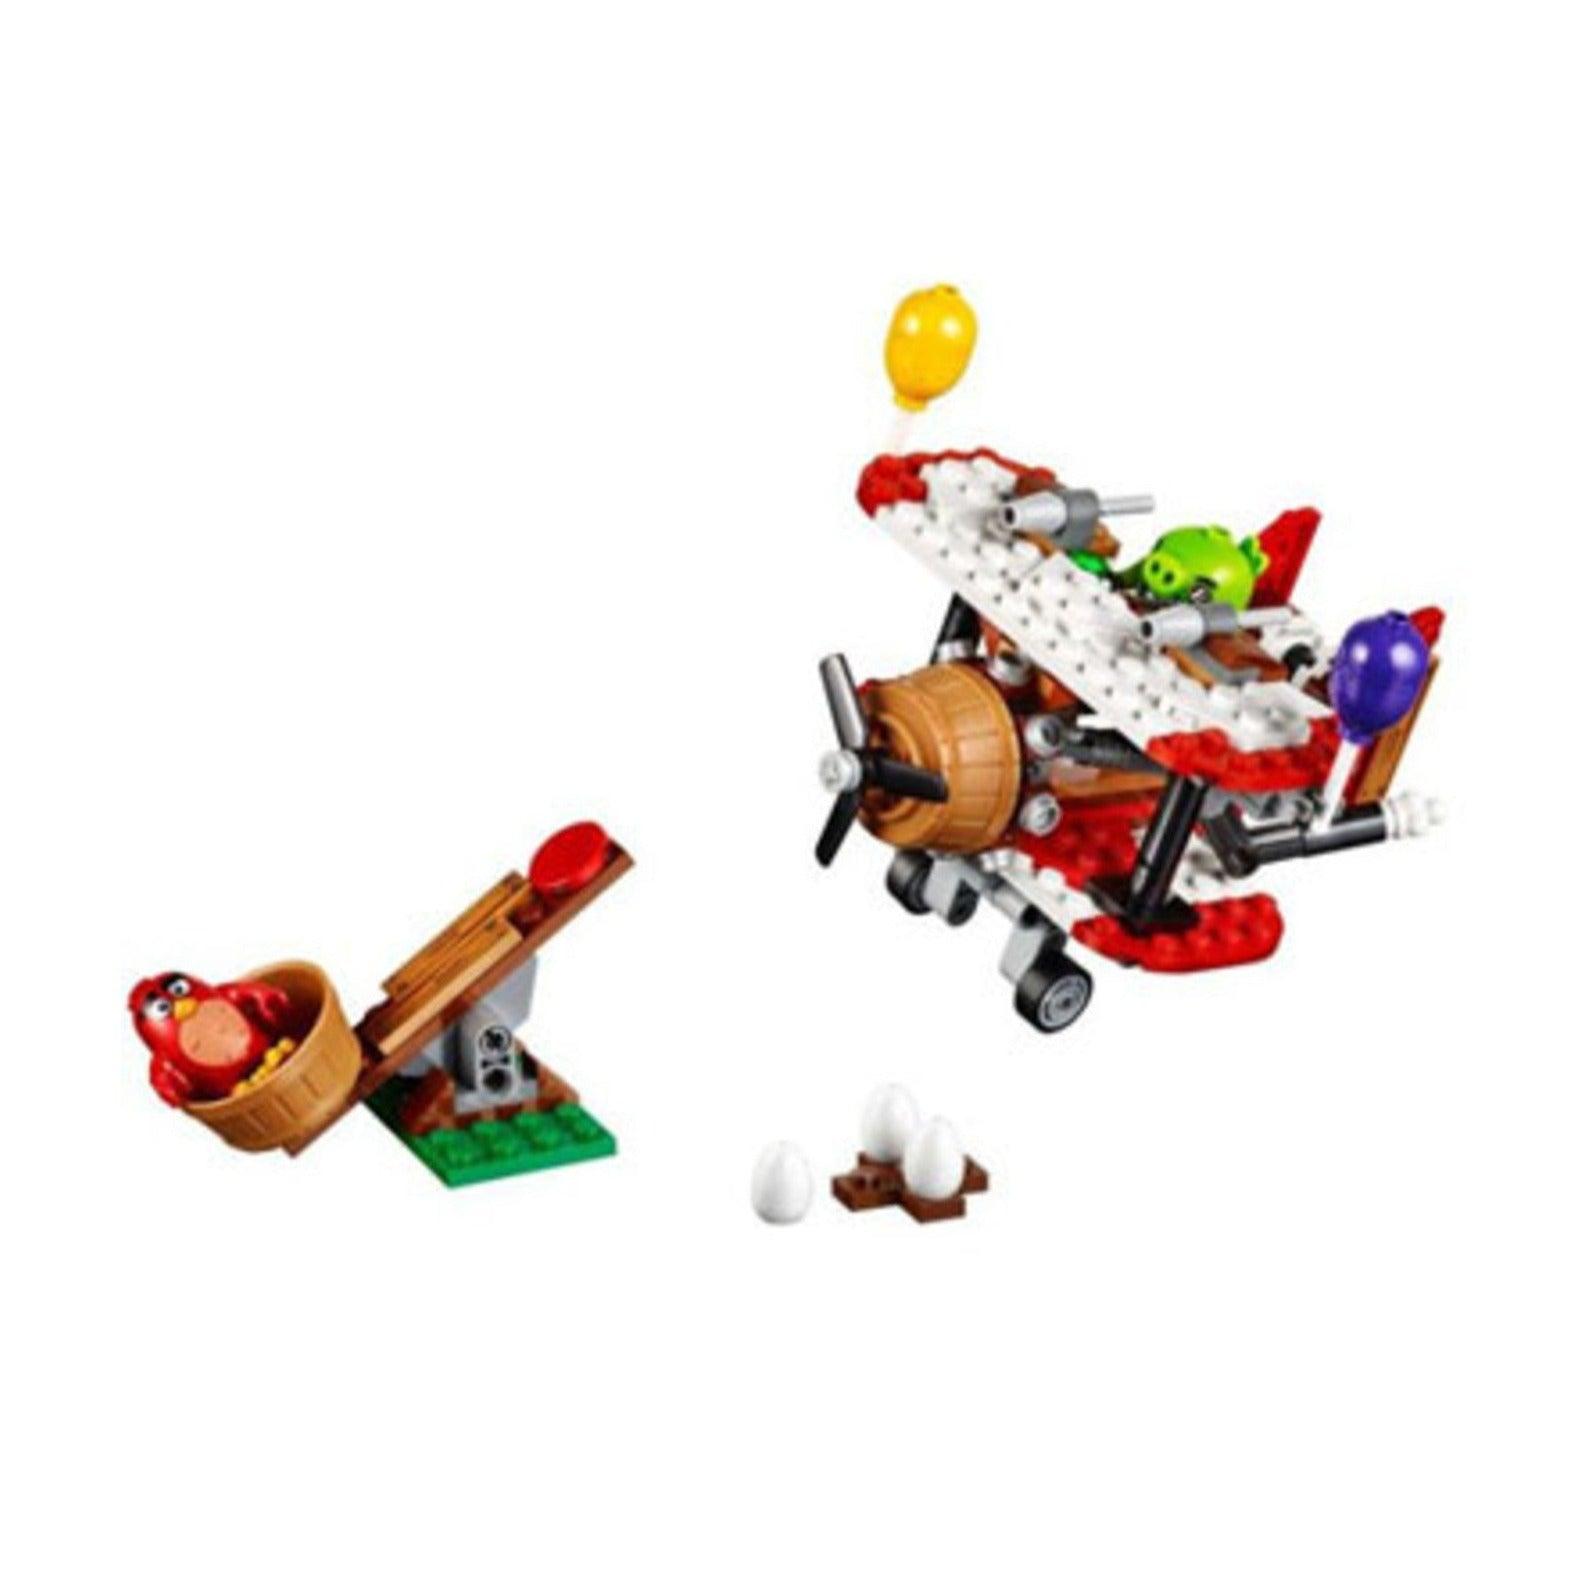 LEGO Piggy Vliegtuigaanval 75822 Angry Birds LEGO ANGRYBIRDS @ 2TTOYS LEGO €. 29.99